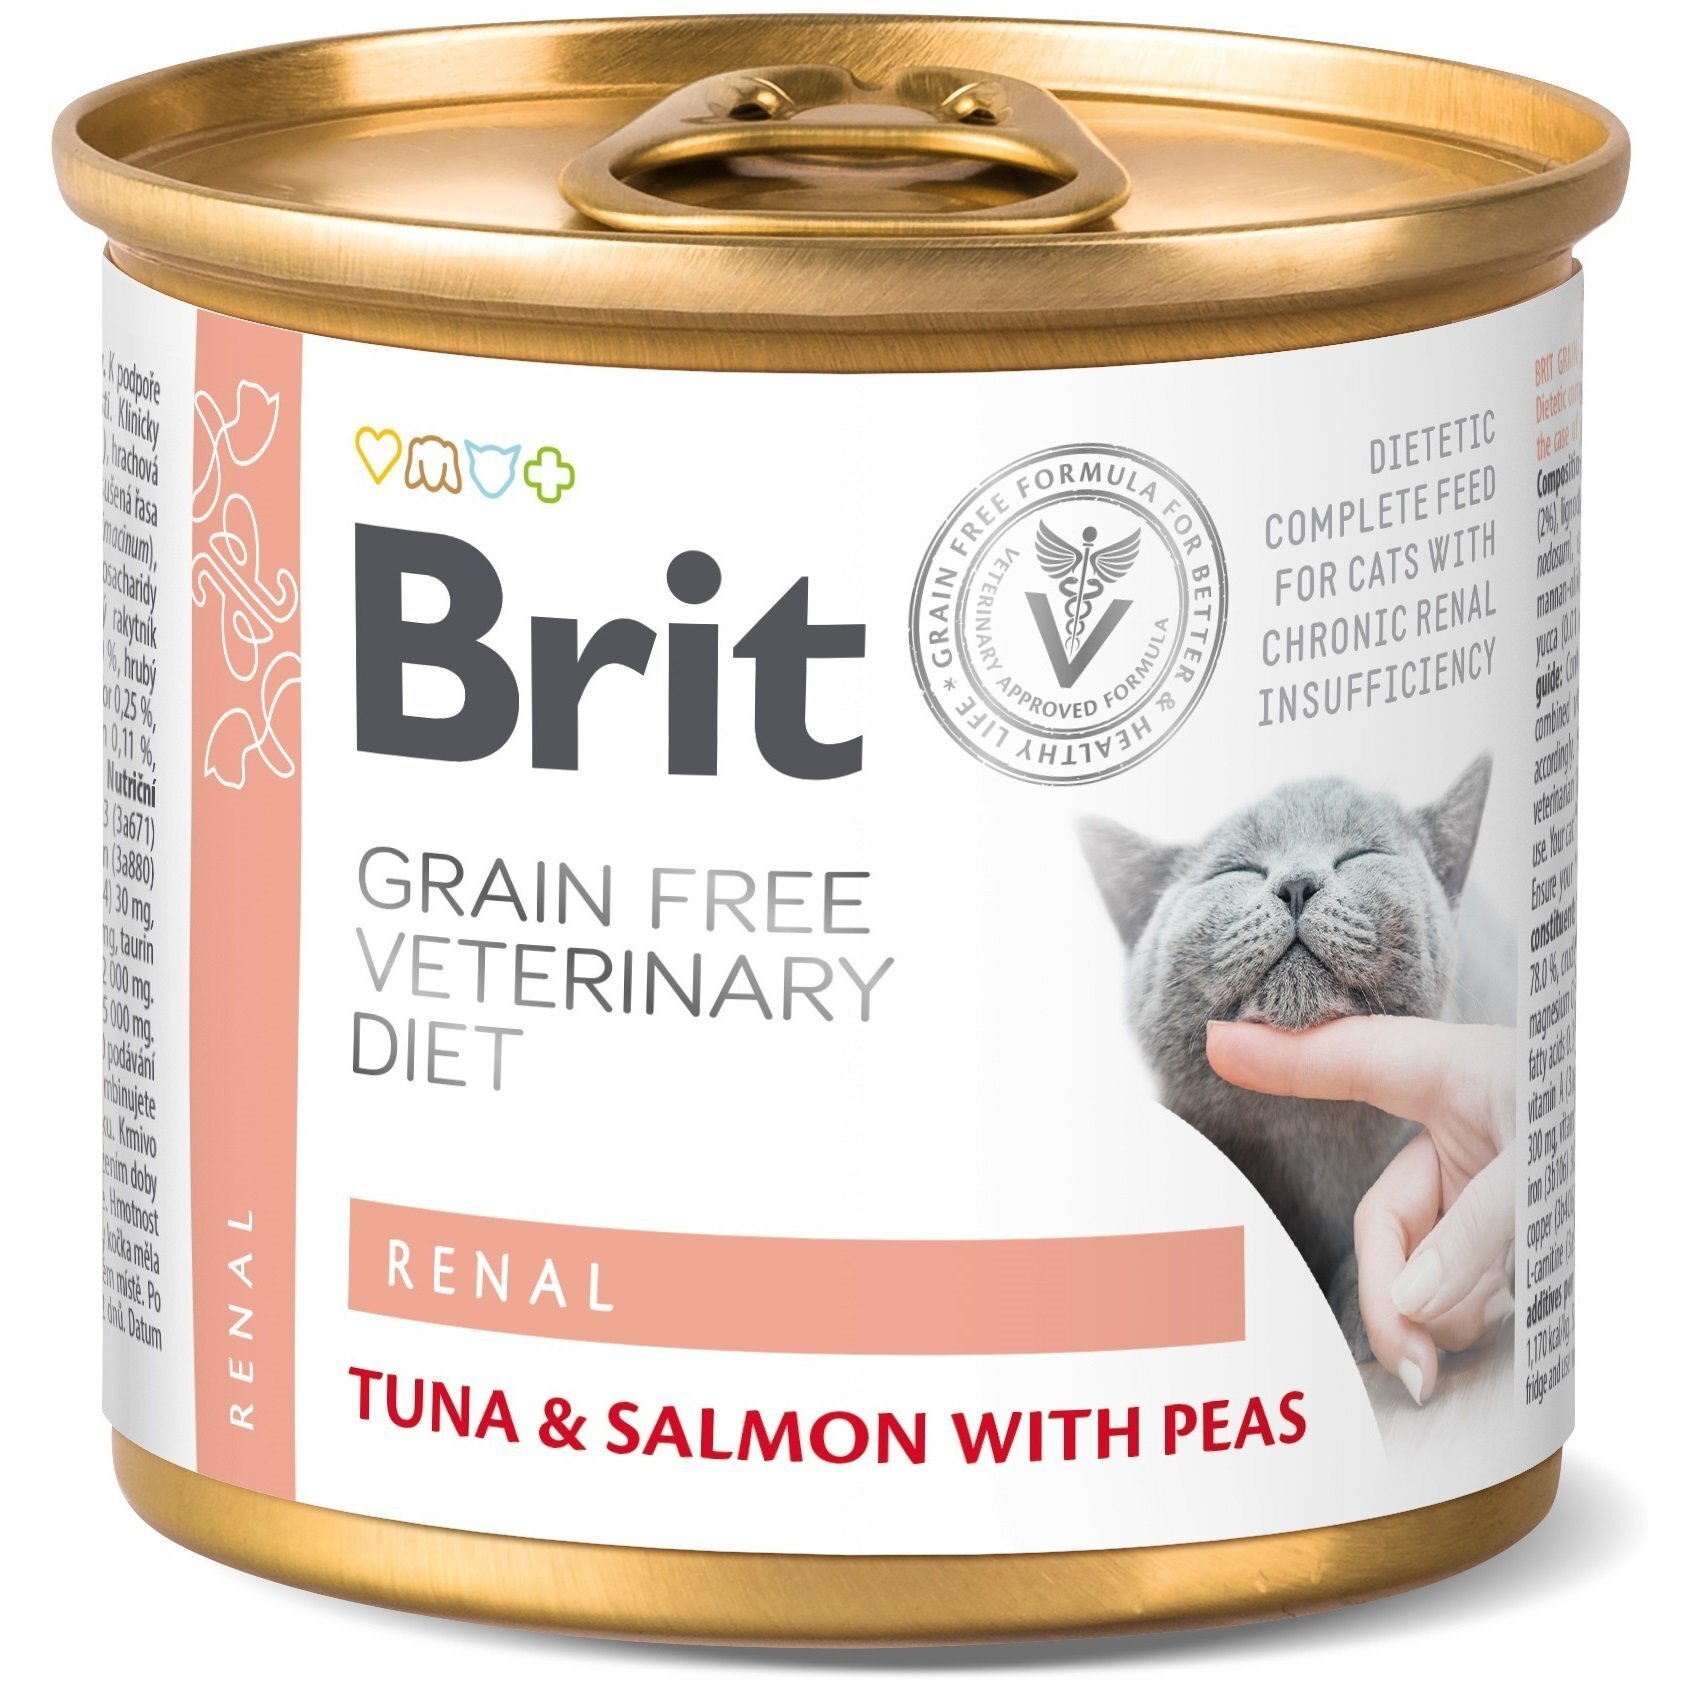 Консерва для котов Brit GF Veterinary Diet с хронической почечной недостаточностью 200г фото 1